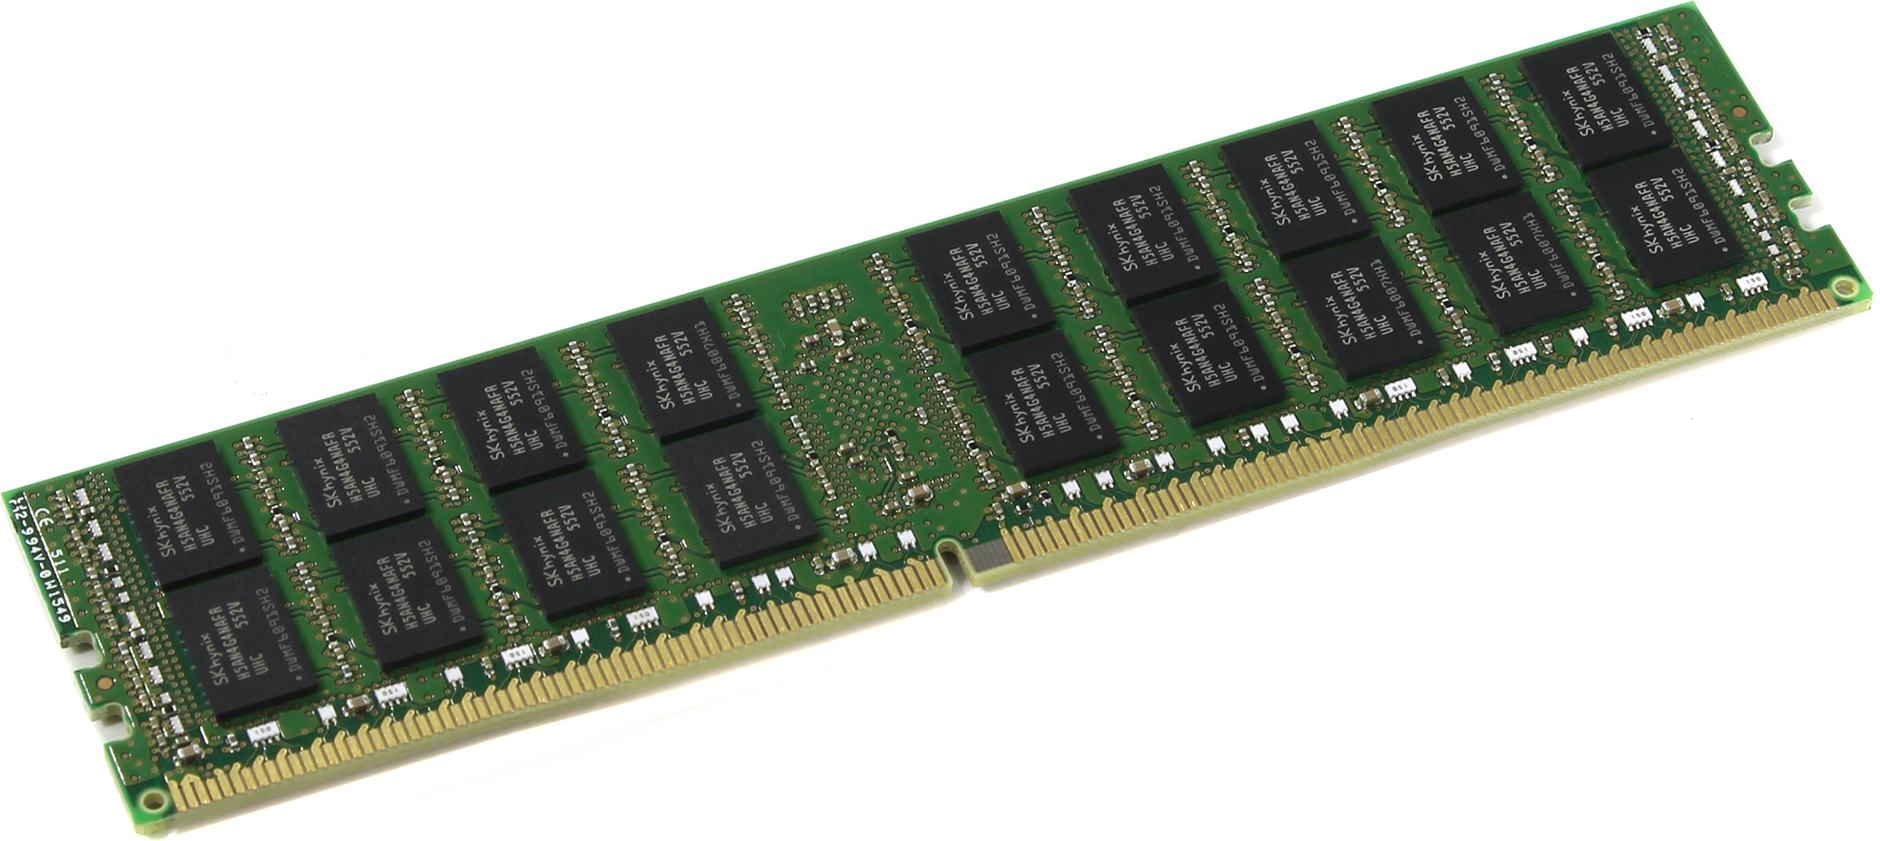 Kingston оперативная память 16гб. Оперативная память 16 ГБ 1 шт. Kingston kvr24r17s4/16. Стандарт ddr4. Регистр DDR. Упаковка модуля памяти Kingston.